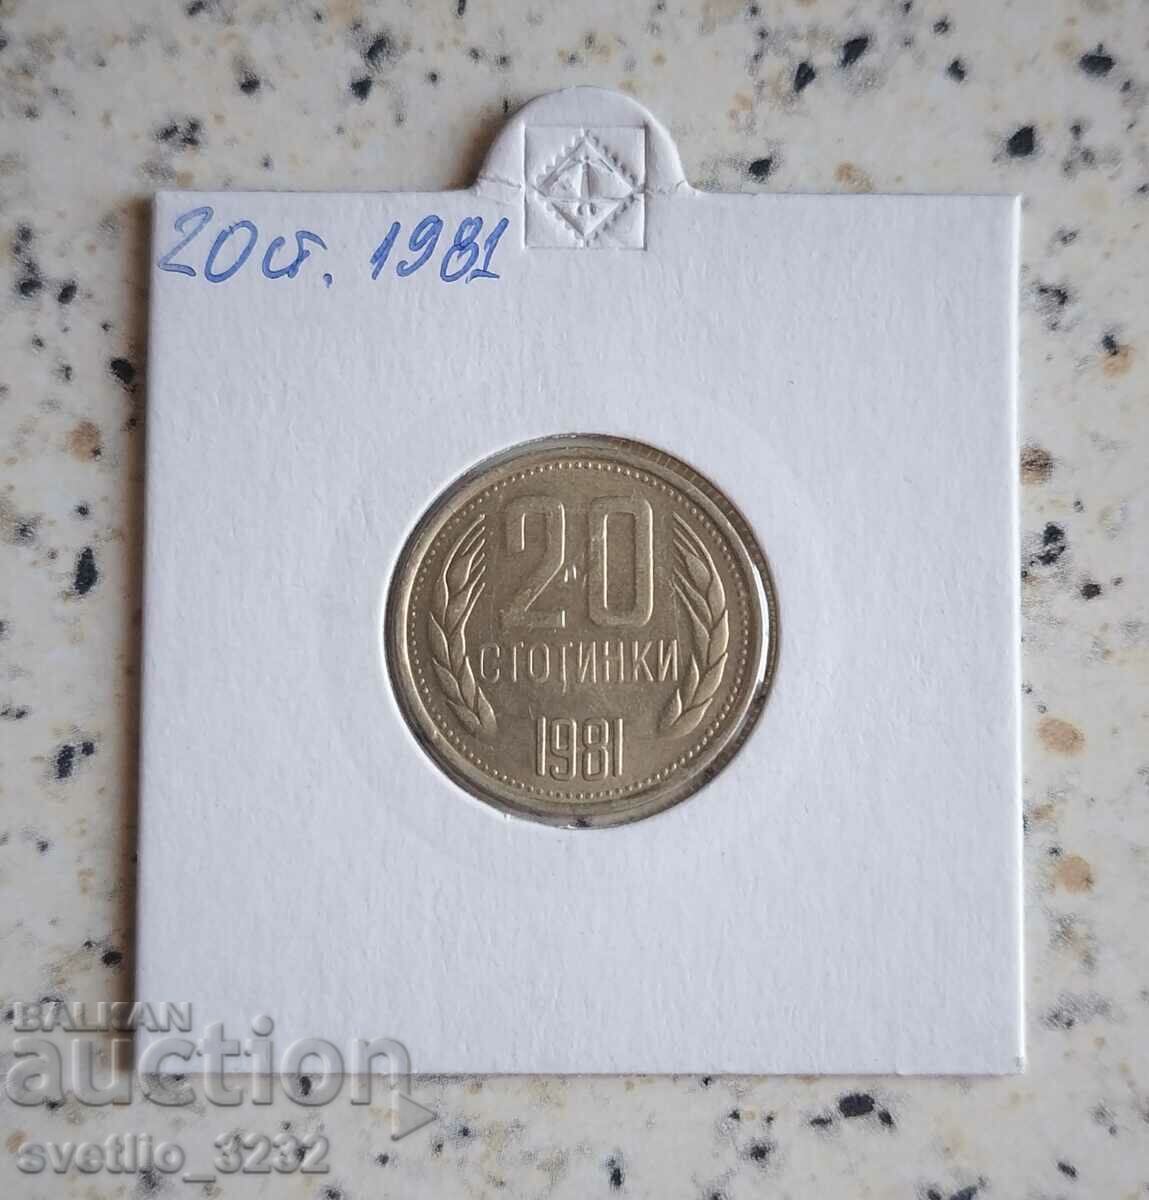 20 σεντς 1981